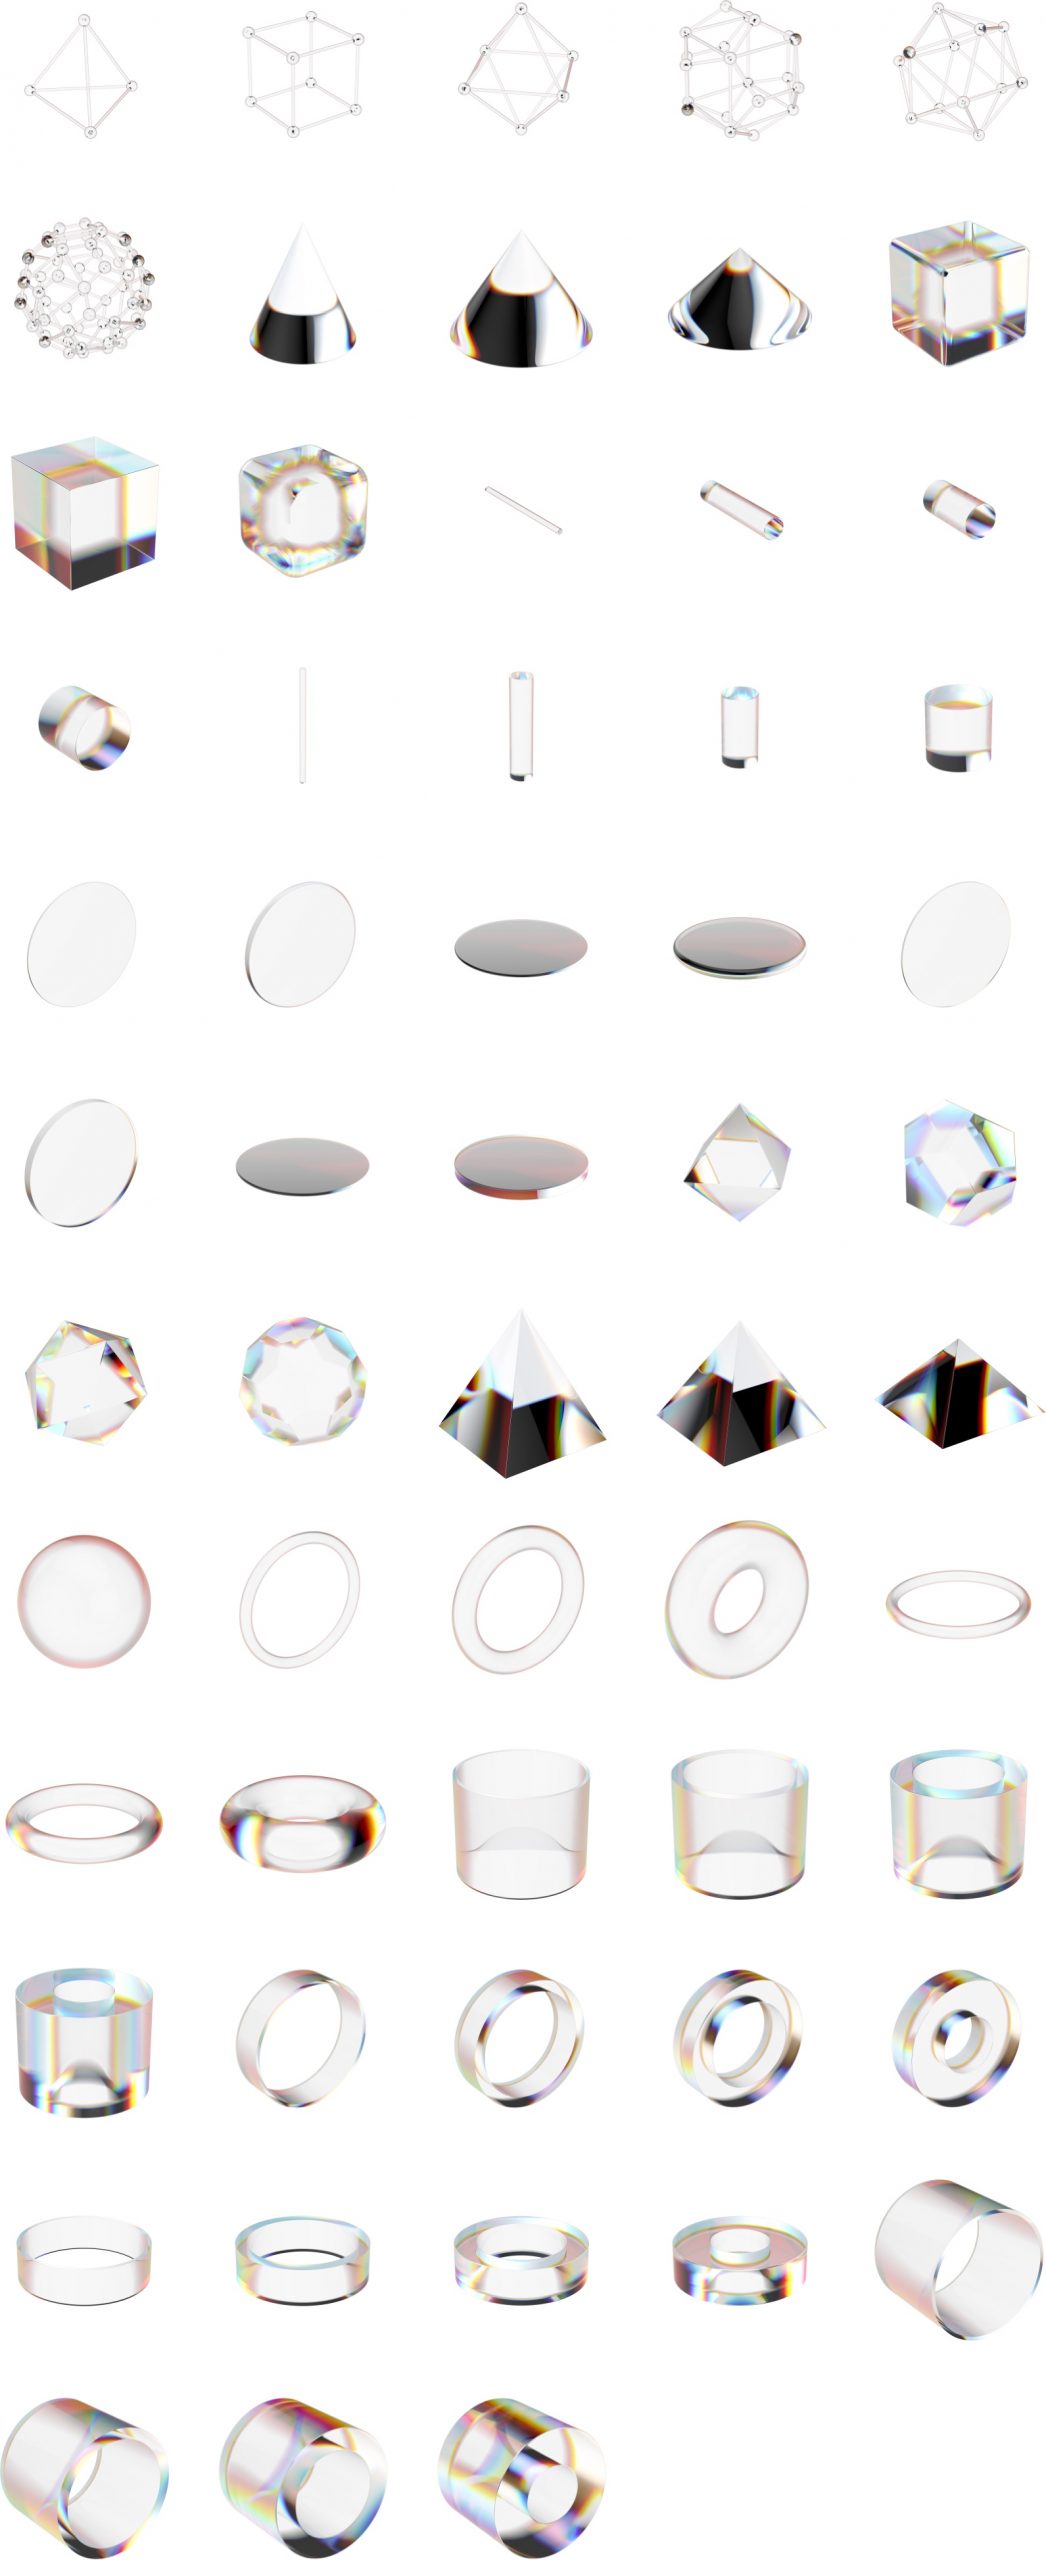 潮流酸性立体虹彩透明玻璃反射水晶棱镜方块晶体PNG免扣设计素材 图片素材 第2张